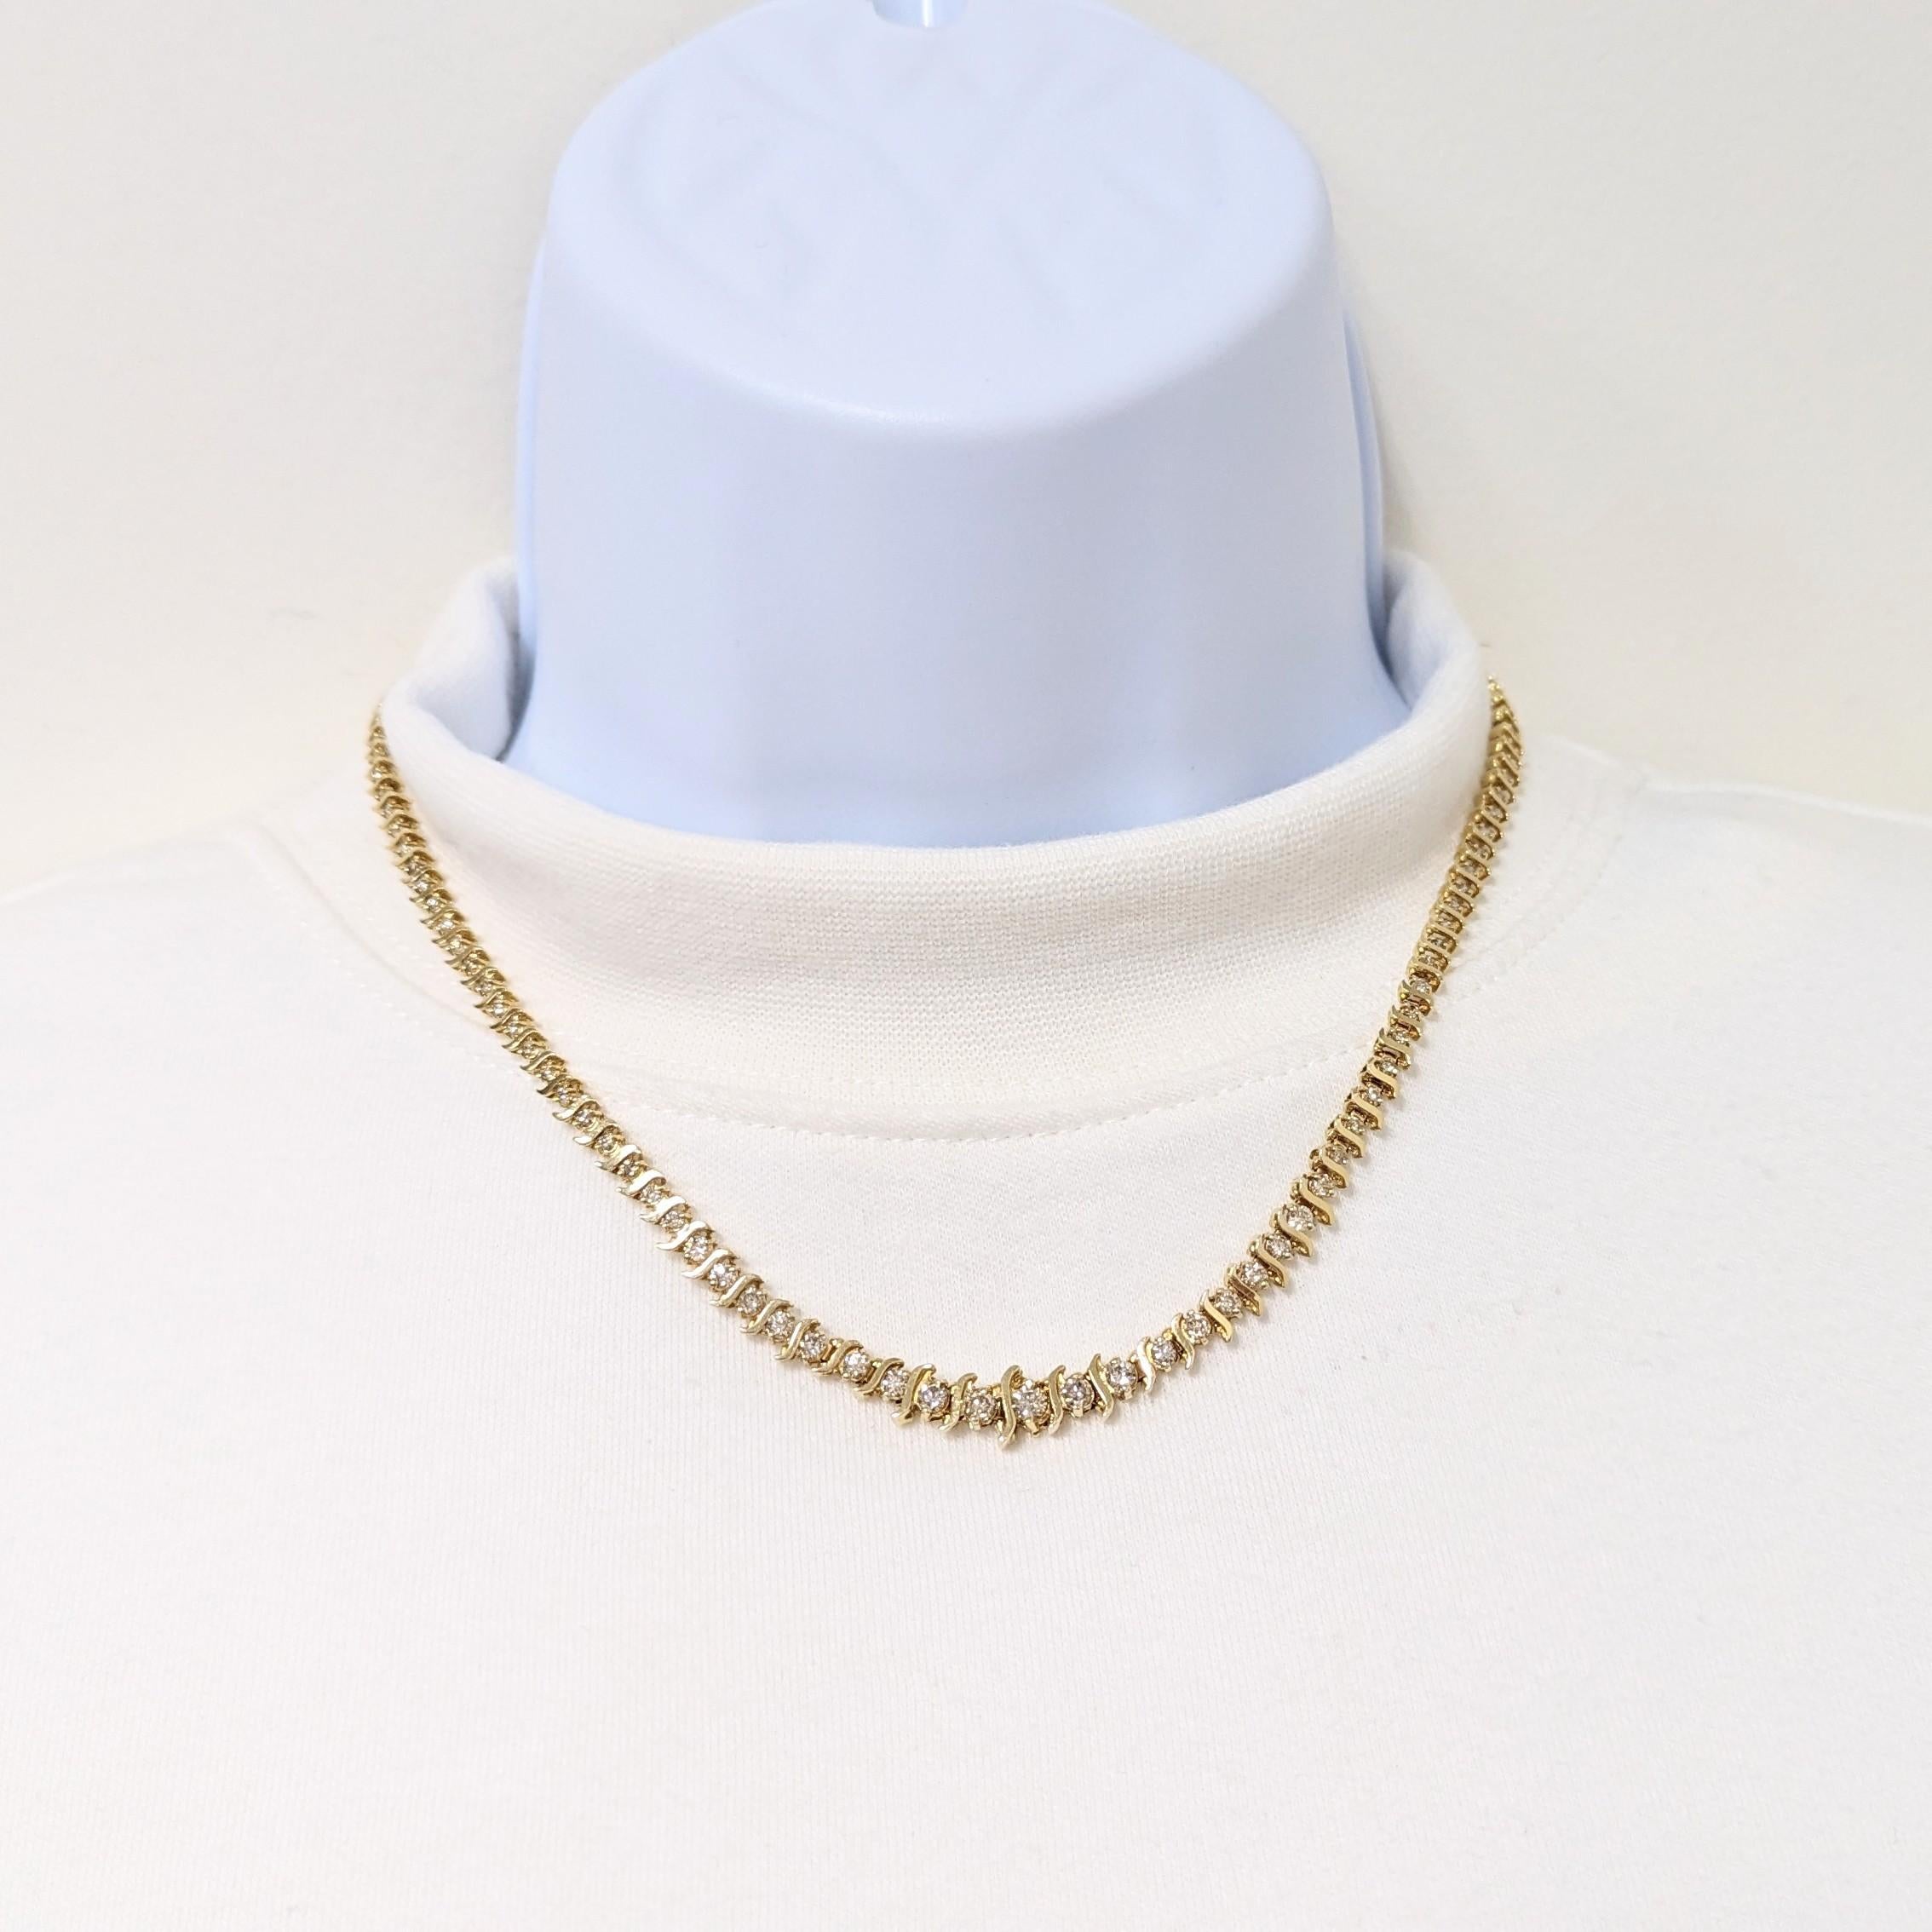 Wunderschöne runde Halskette mit 4,00 kt. weißen Diamanten.  Handgefertigt in 14k Gelbgold.  Die Länge beträgt 16,5